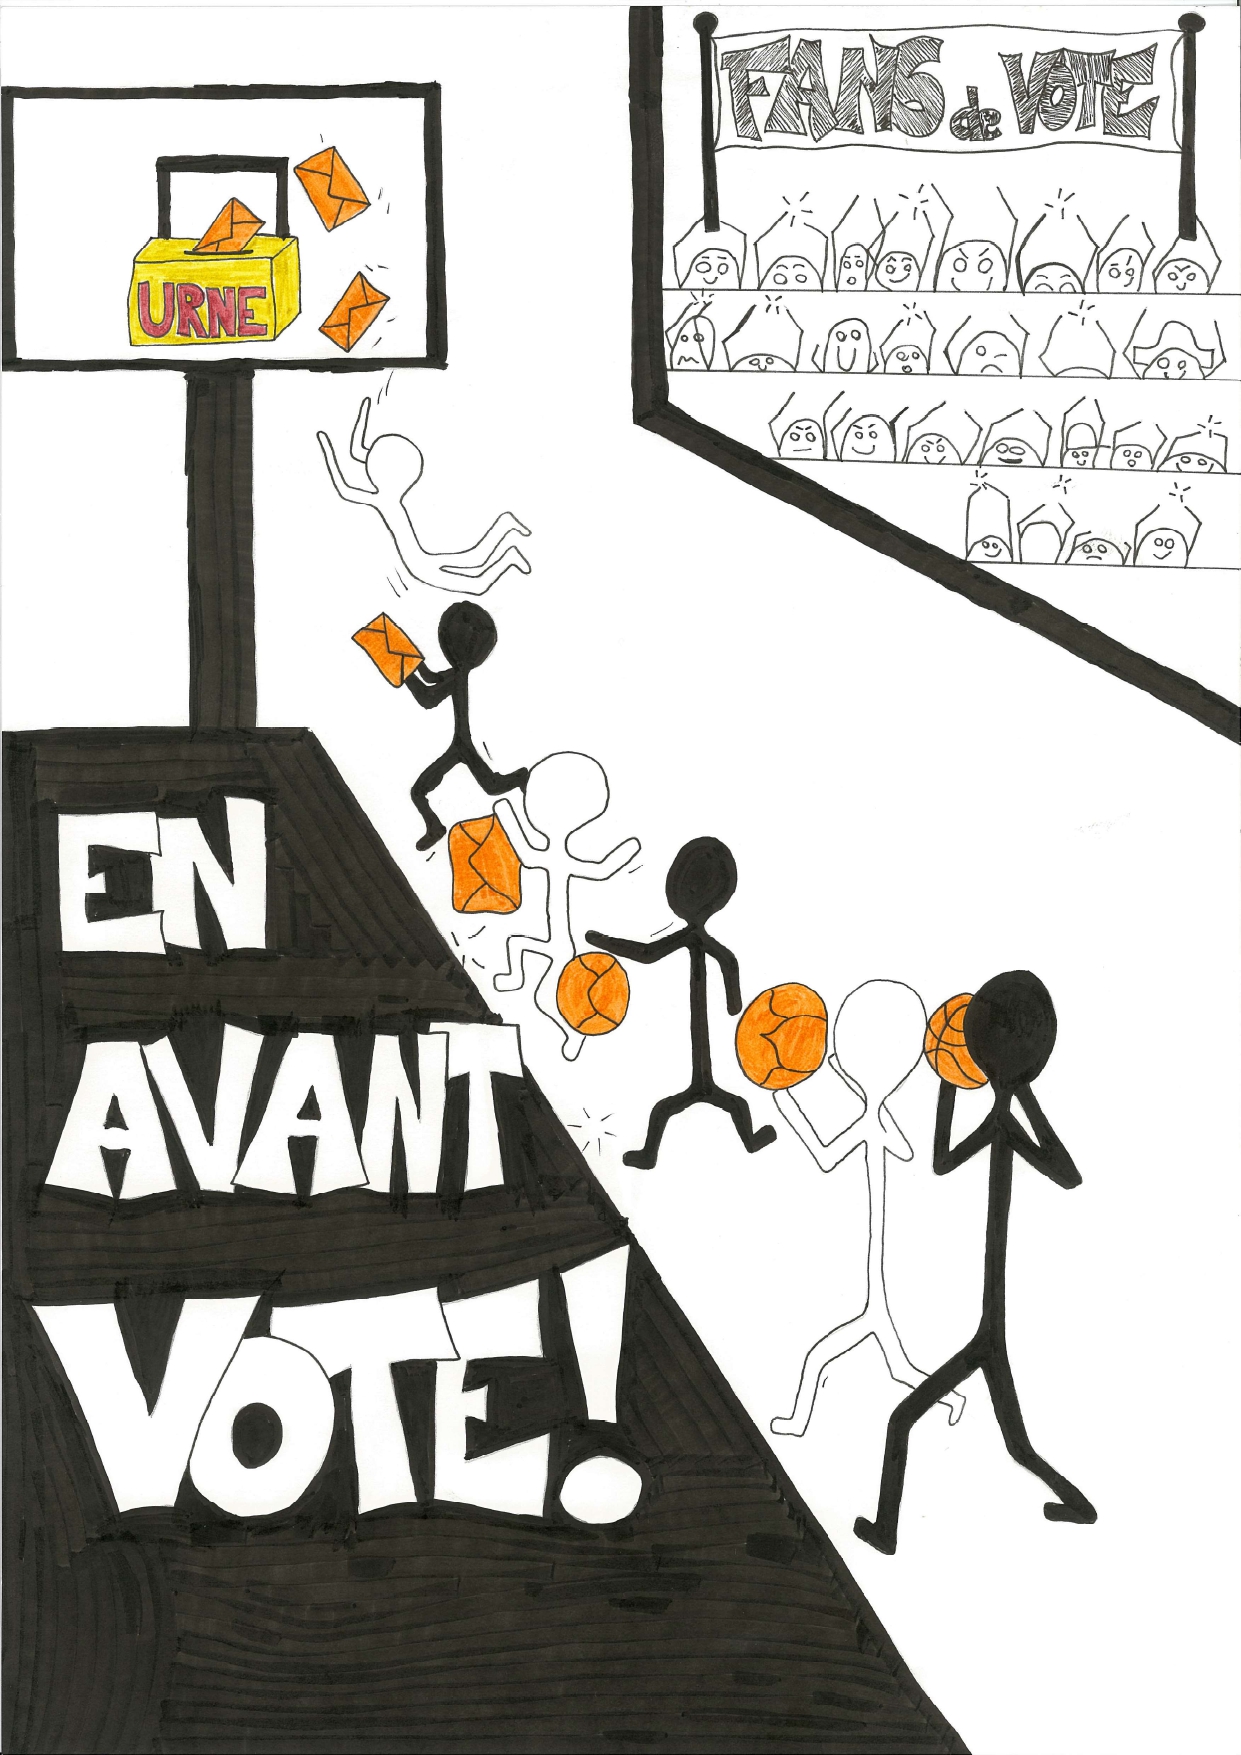 04_Ecole_En_avant_vote